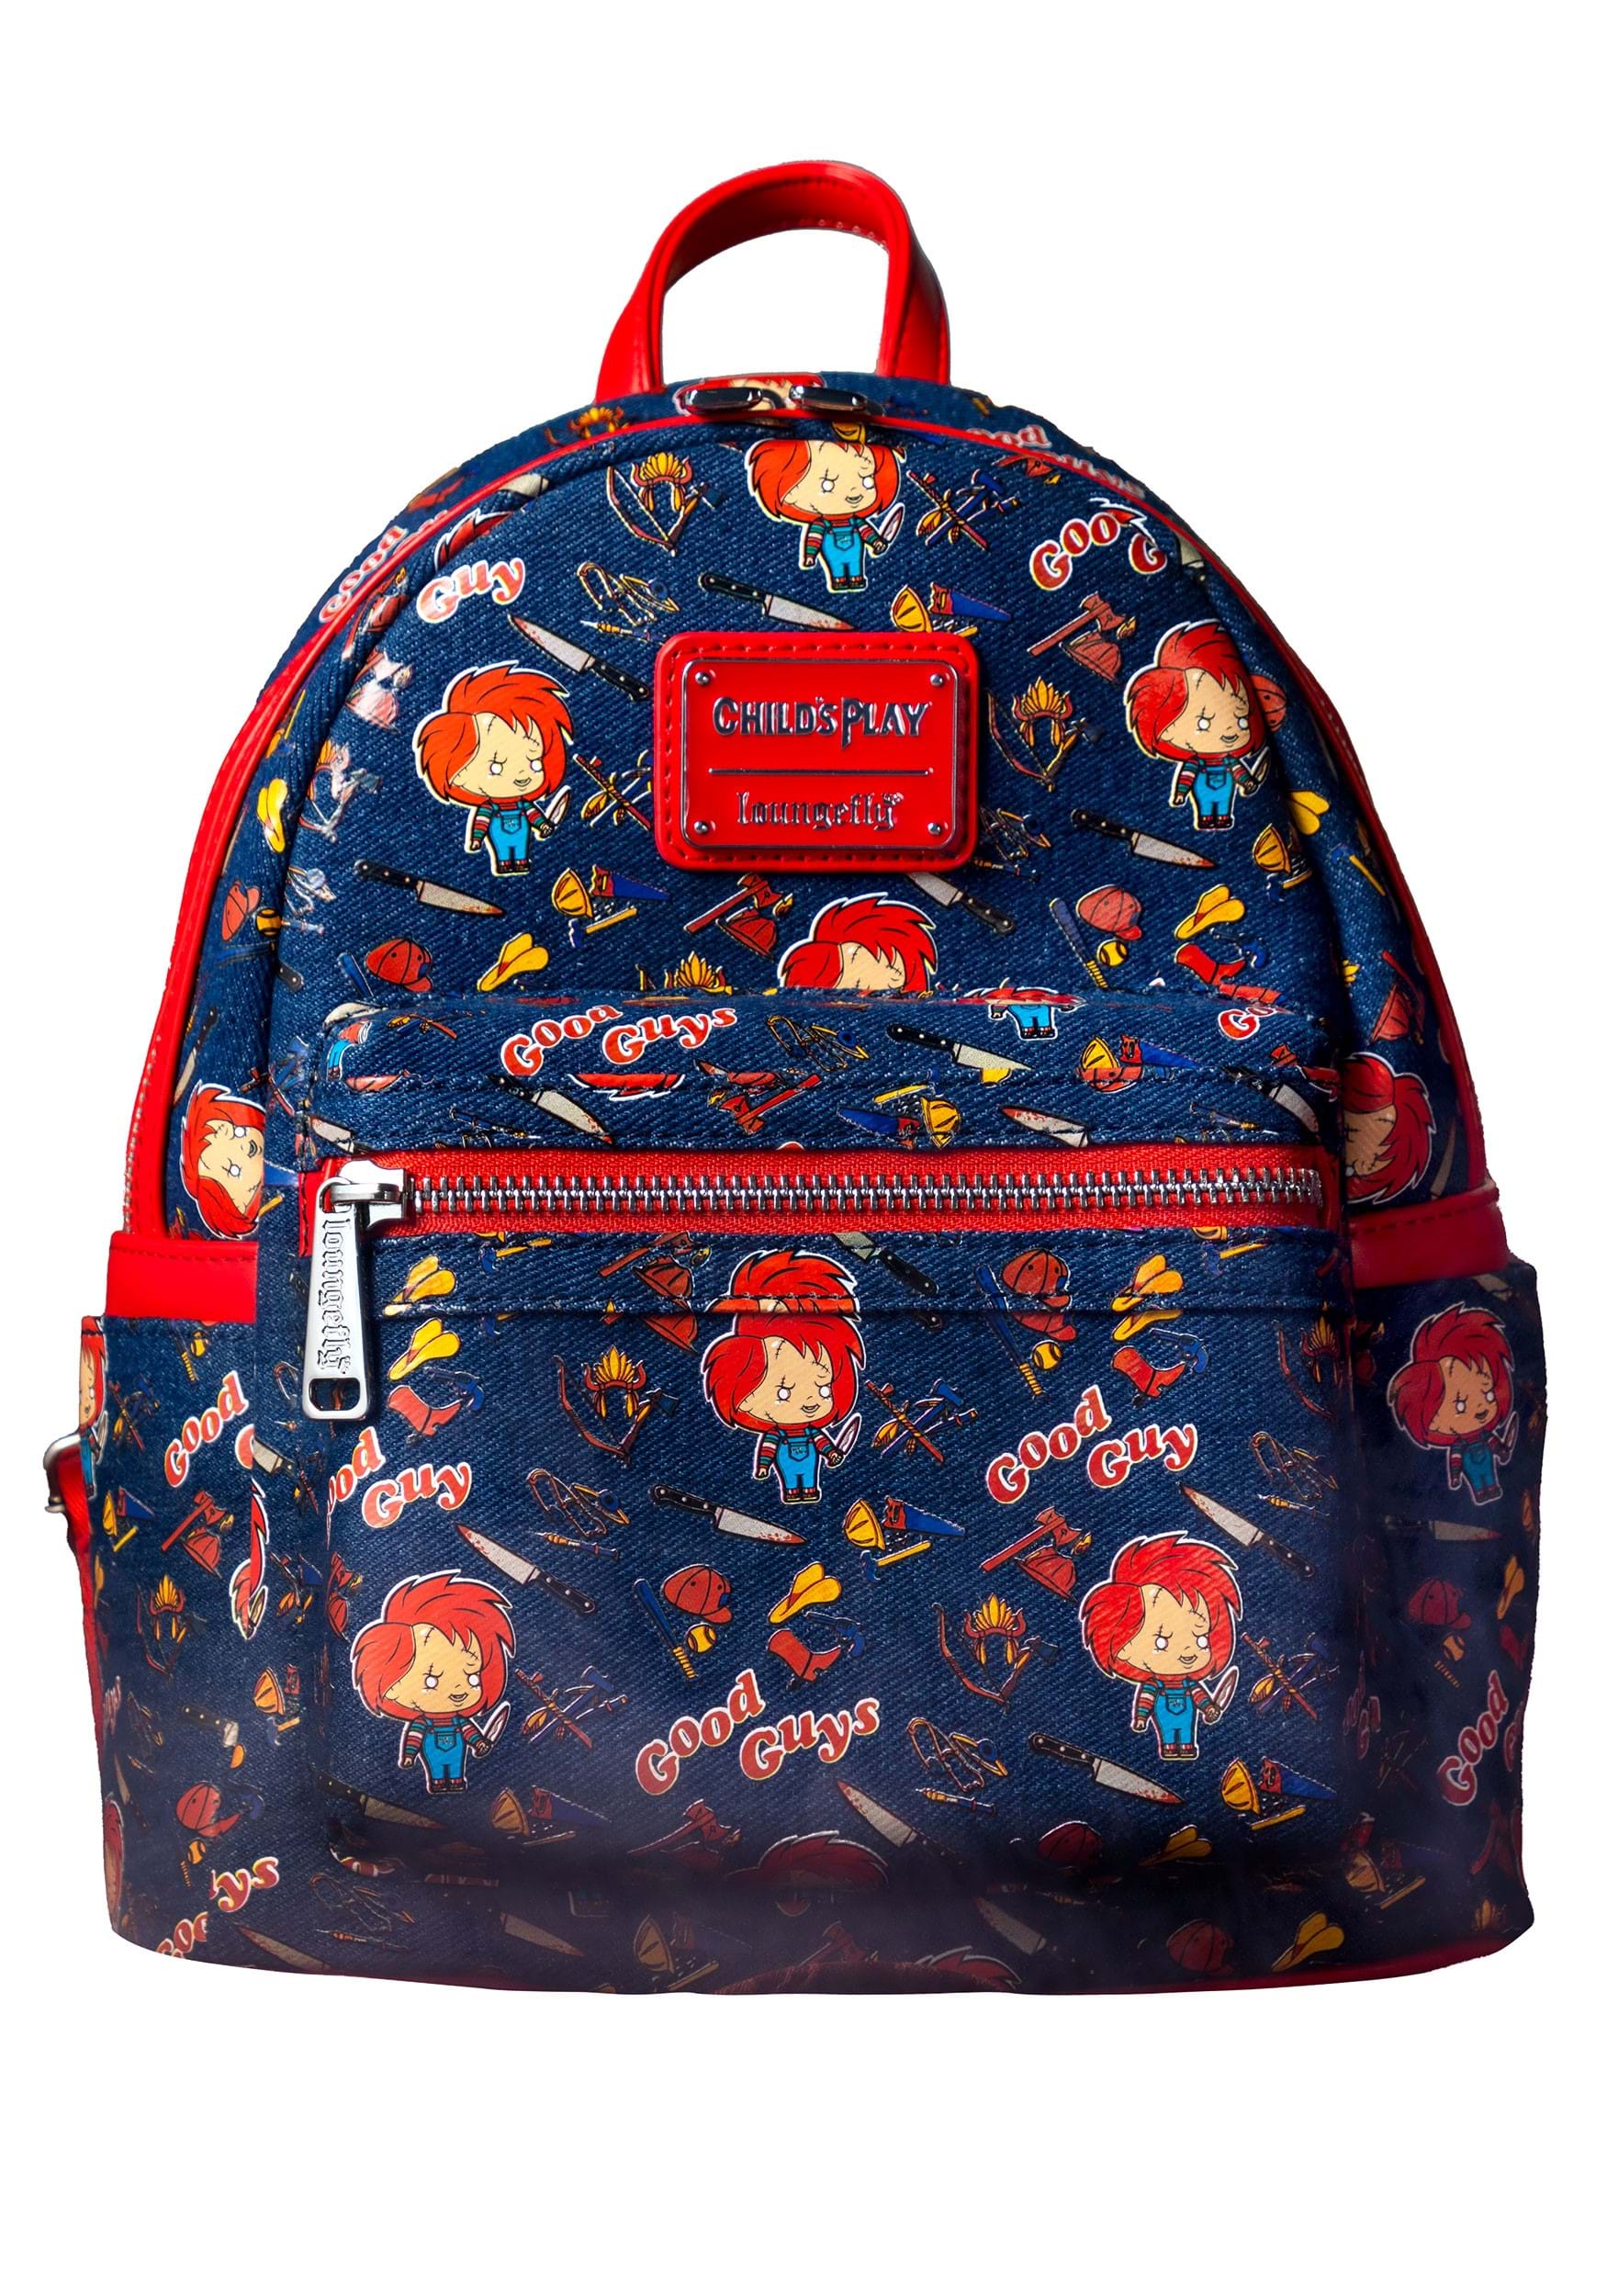 Denim Blue Mini Backpack